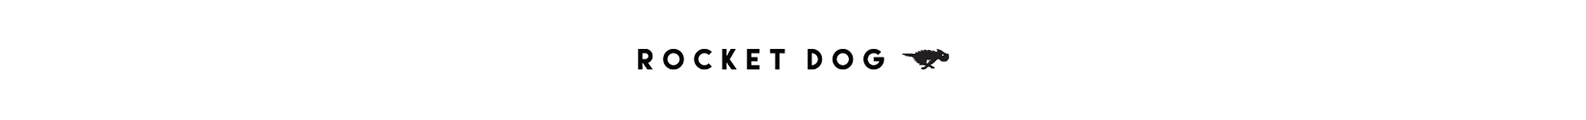 Rocket Dog brand header image